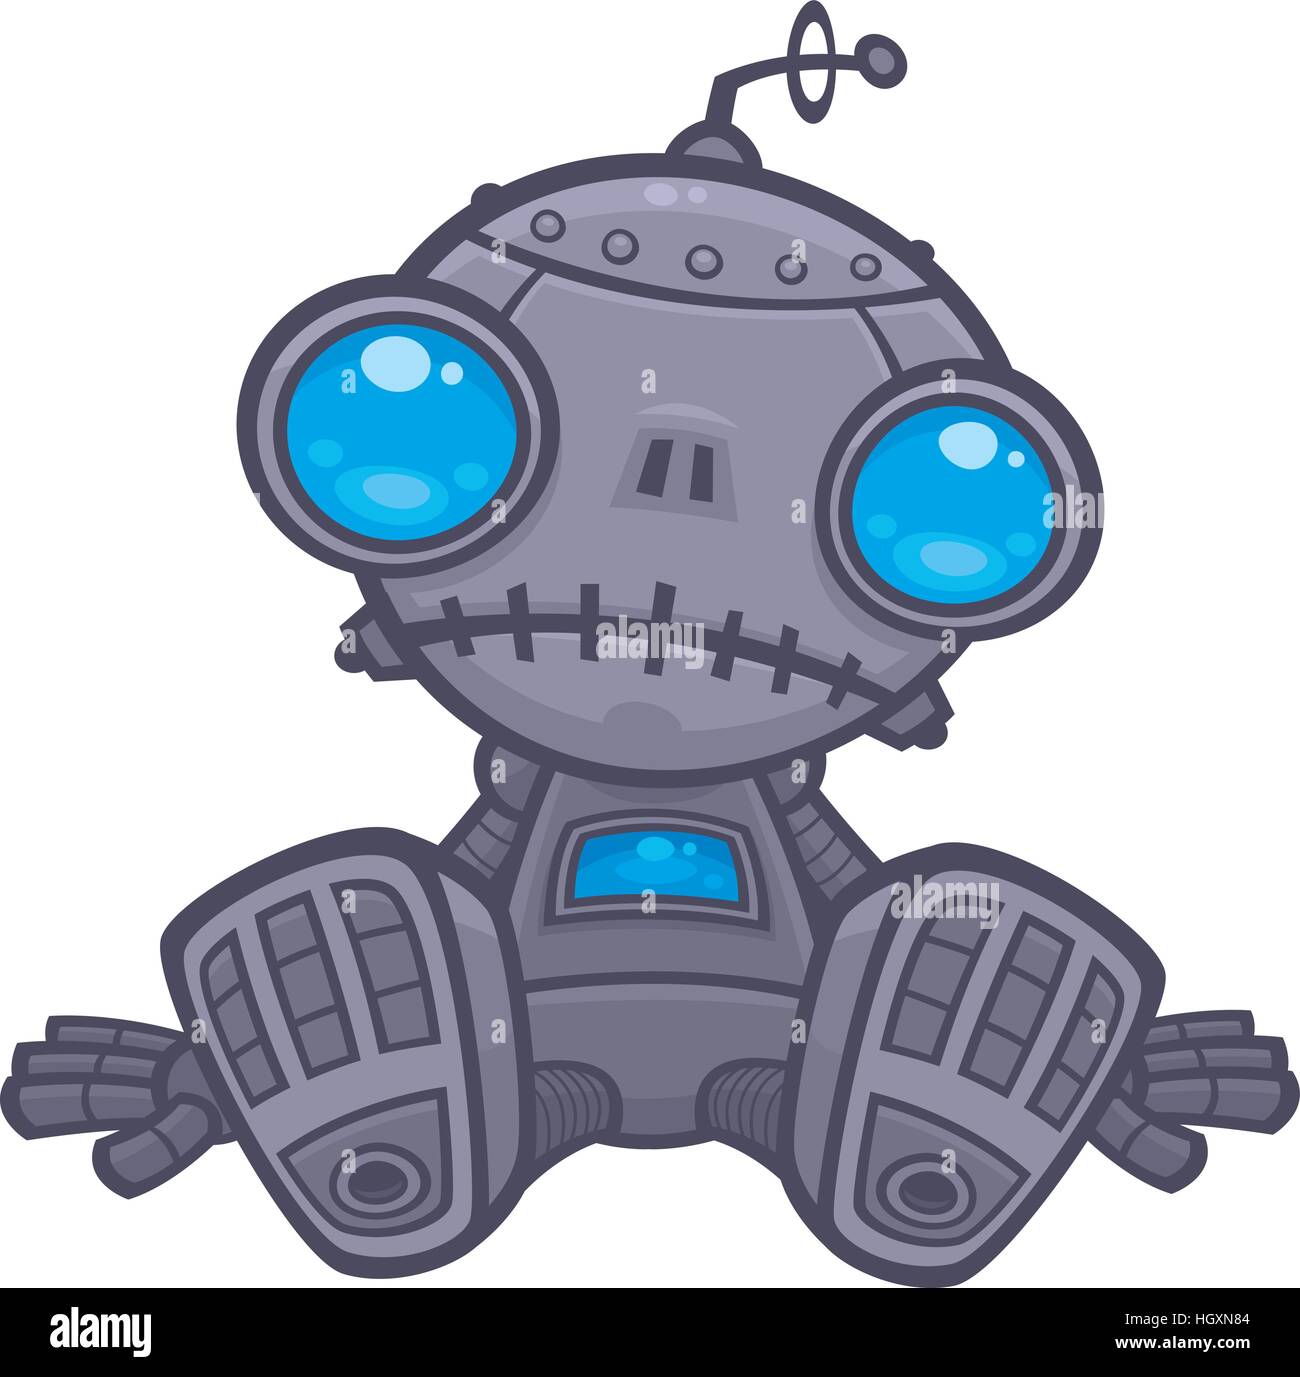 Vektor-Cartoon-Illustration von einem niedlichen, aber traurige kleine Roboter mit blauen Augen auf dem Boden sitzen. Stock Vektor